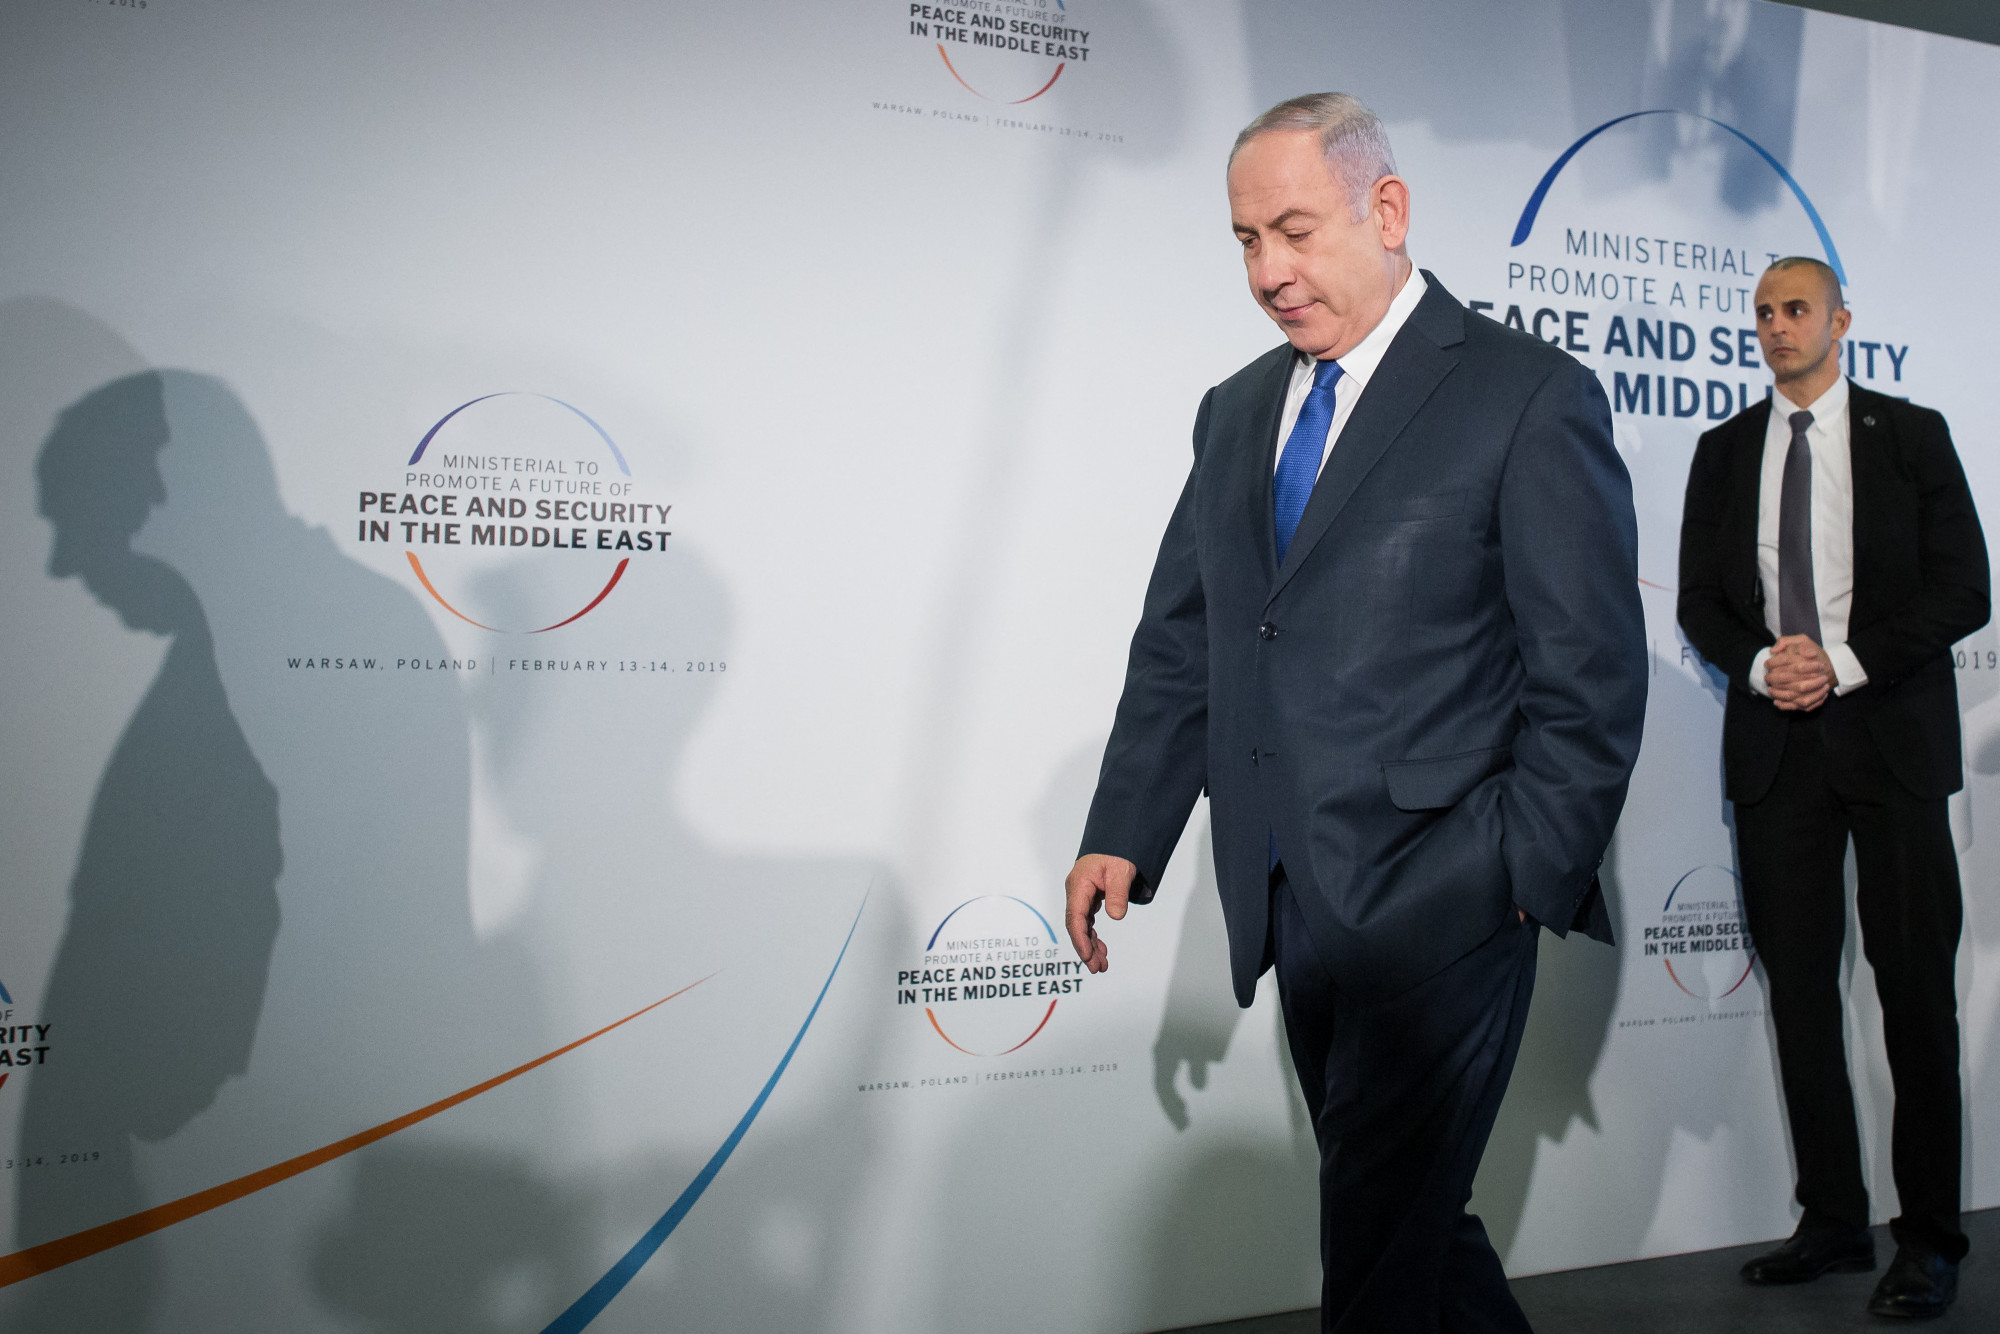 A Gázai övezet elleni atomcsapást is a lehetőségek közé sorolta az egyik izraeli miniszter, emiatt Netanjahu felfüggesztette a részvételét a kormányüléseken